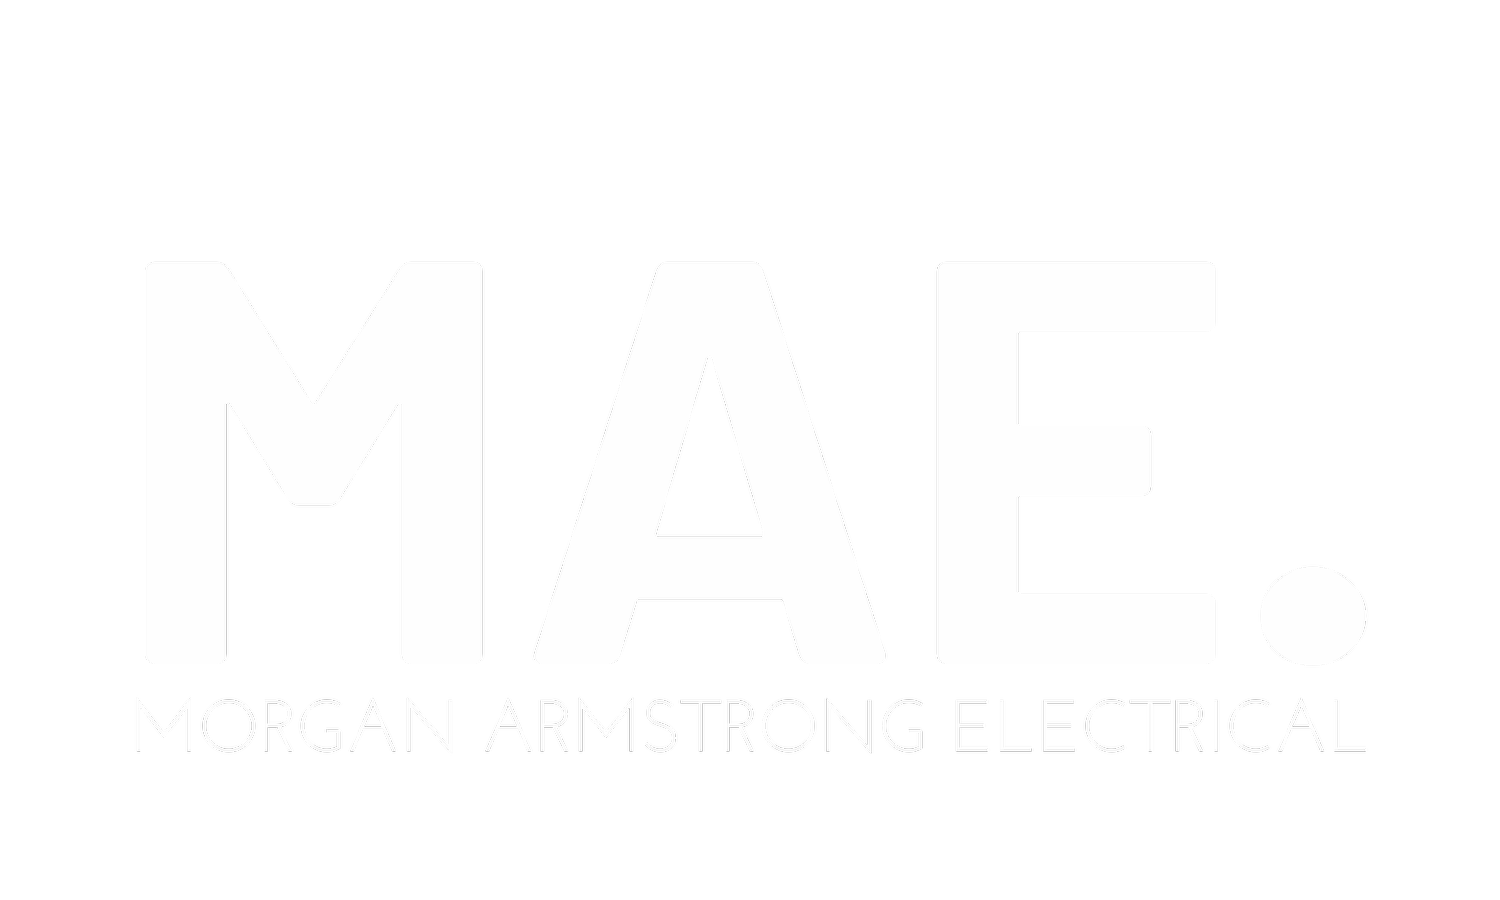 Morgan Armstrong Electrical